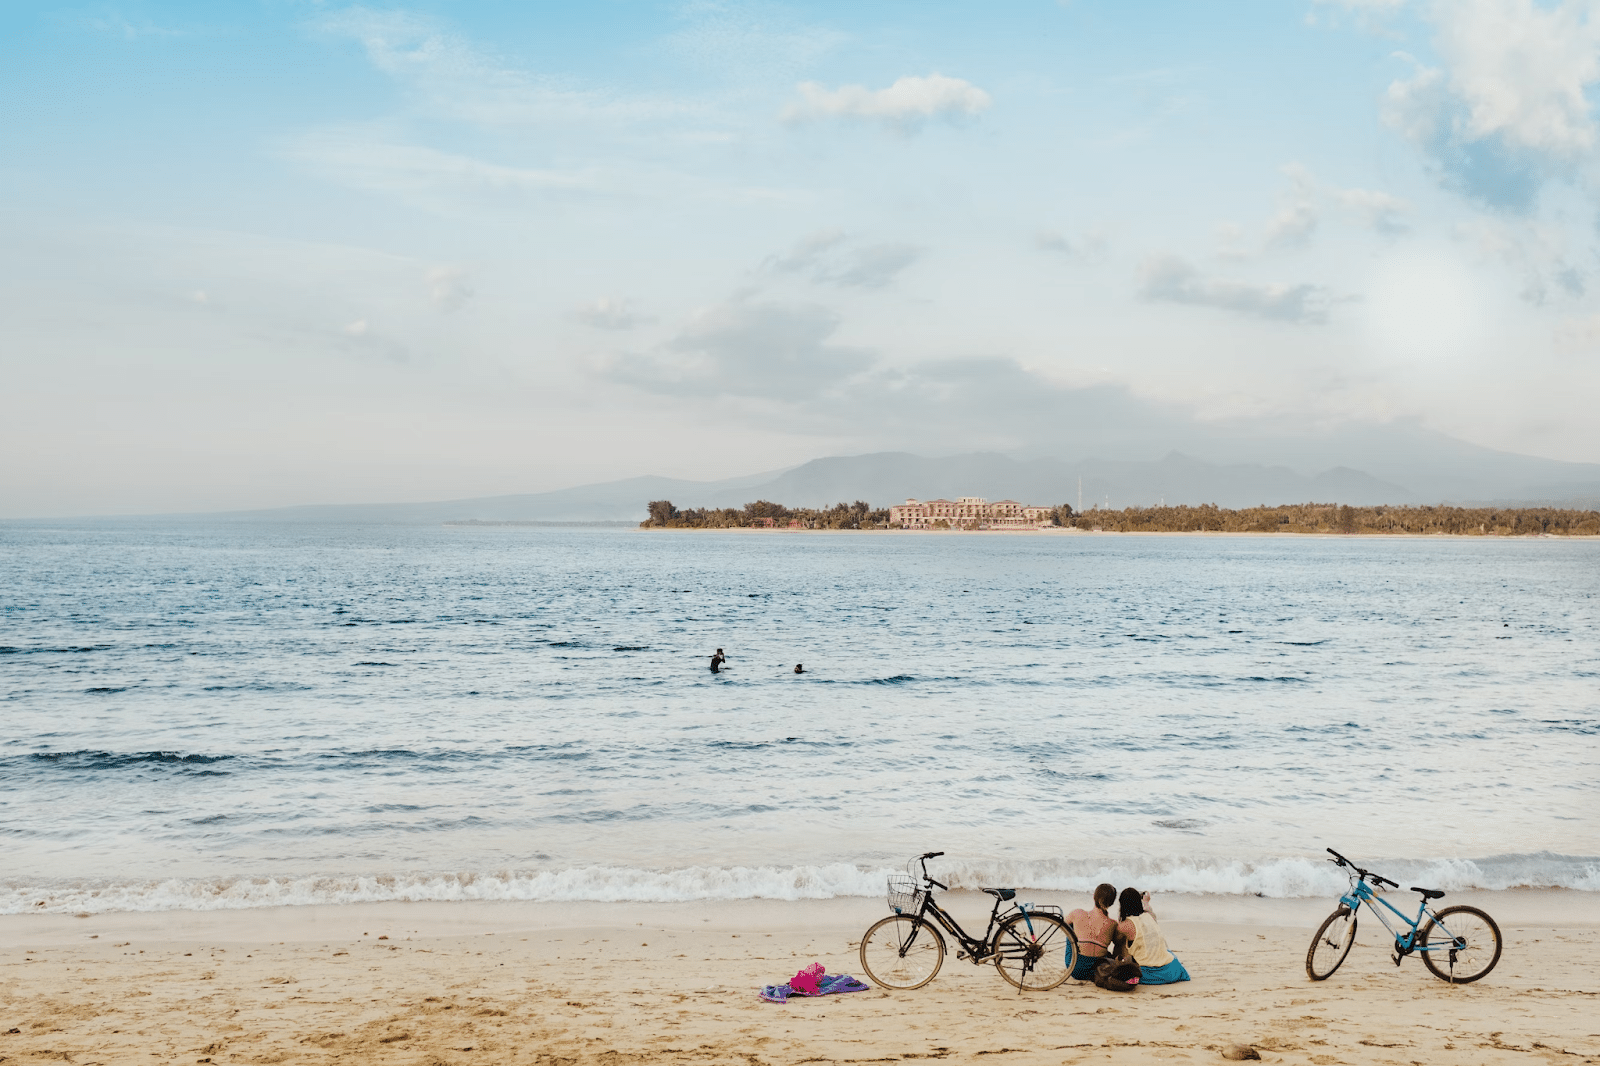 Uma praia de Gili Meno, Os visitantes da praia deslocam-se de bicicleta.